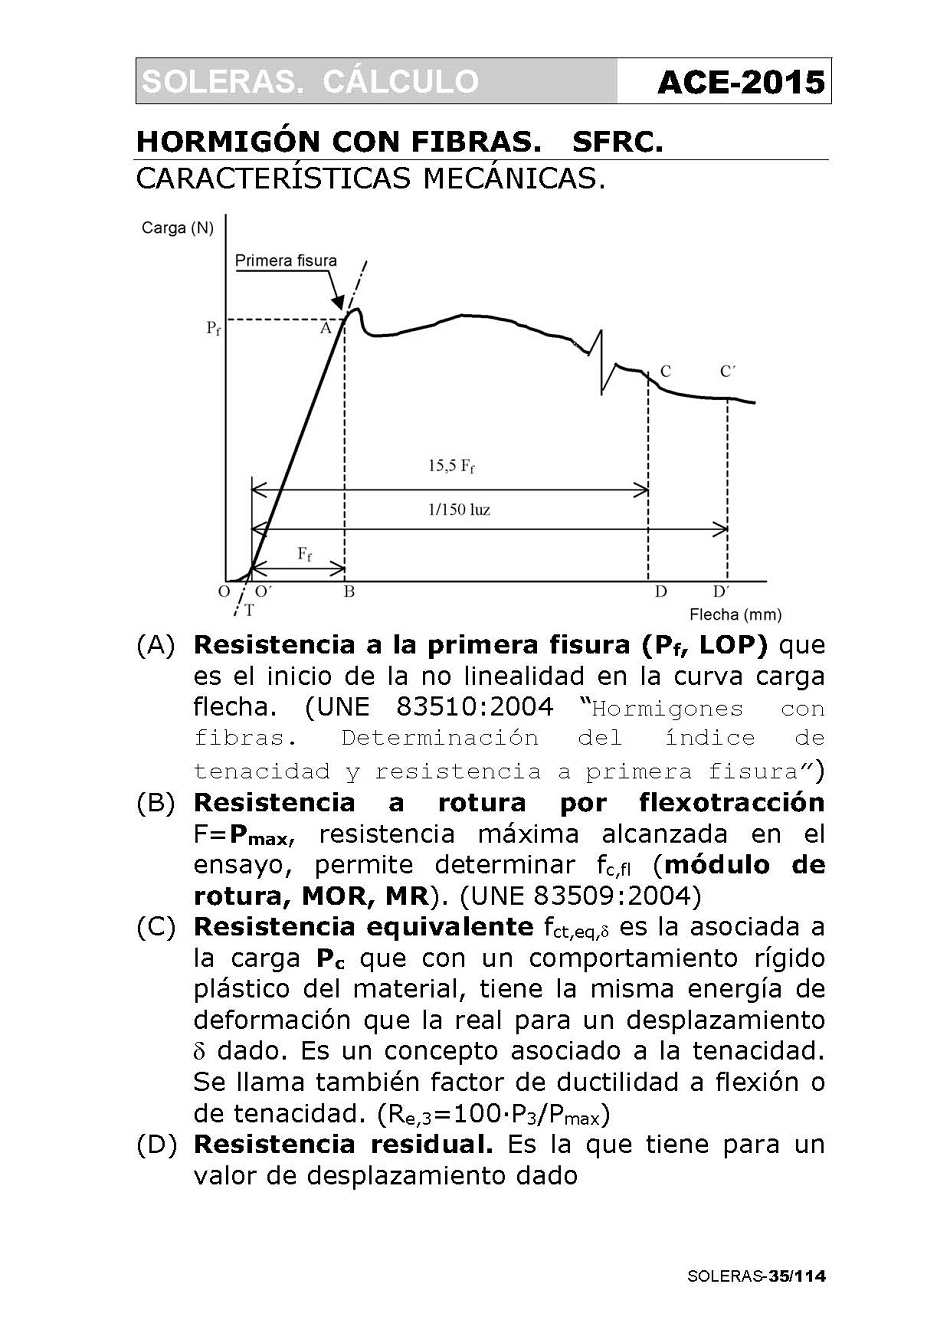 Cálculo de Soleras de Hormigón. Página 35